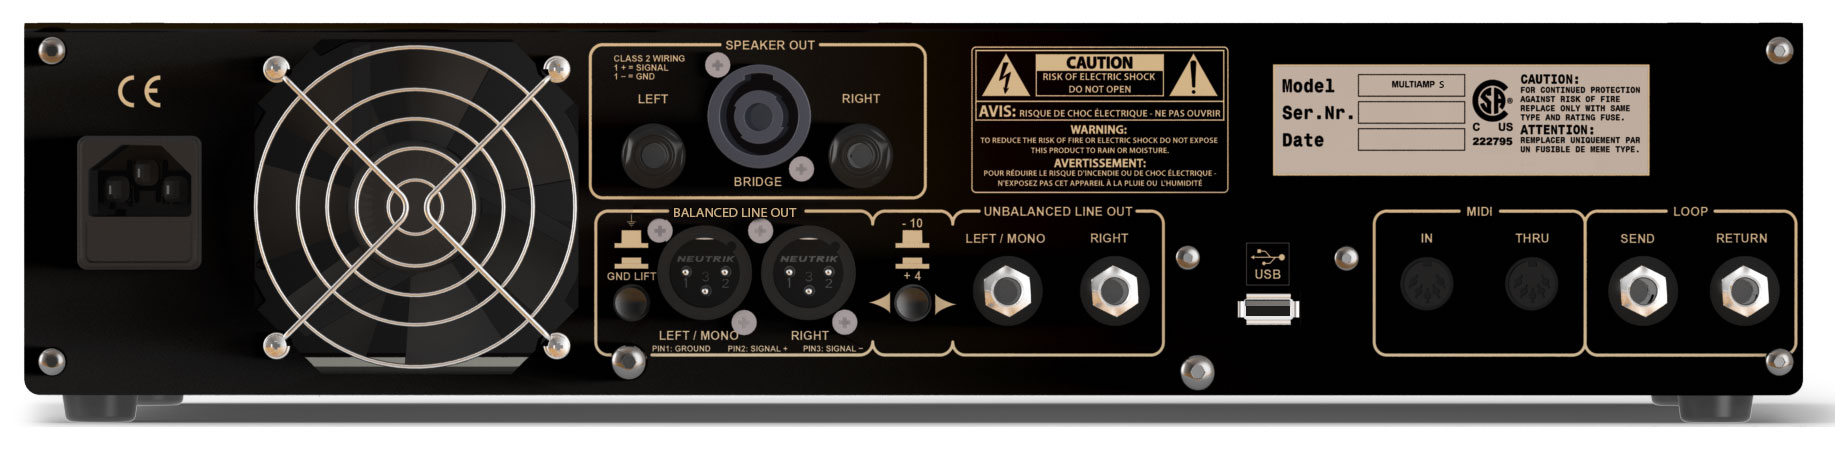 Markbass Bass Multiamp S 2015 Stereo Bass Amplifier 2x500w 4ohms - Bass amp head - Variation 2